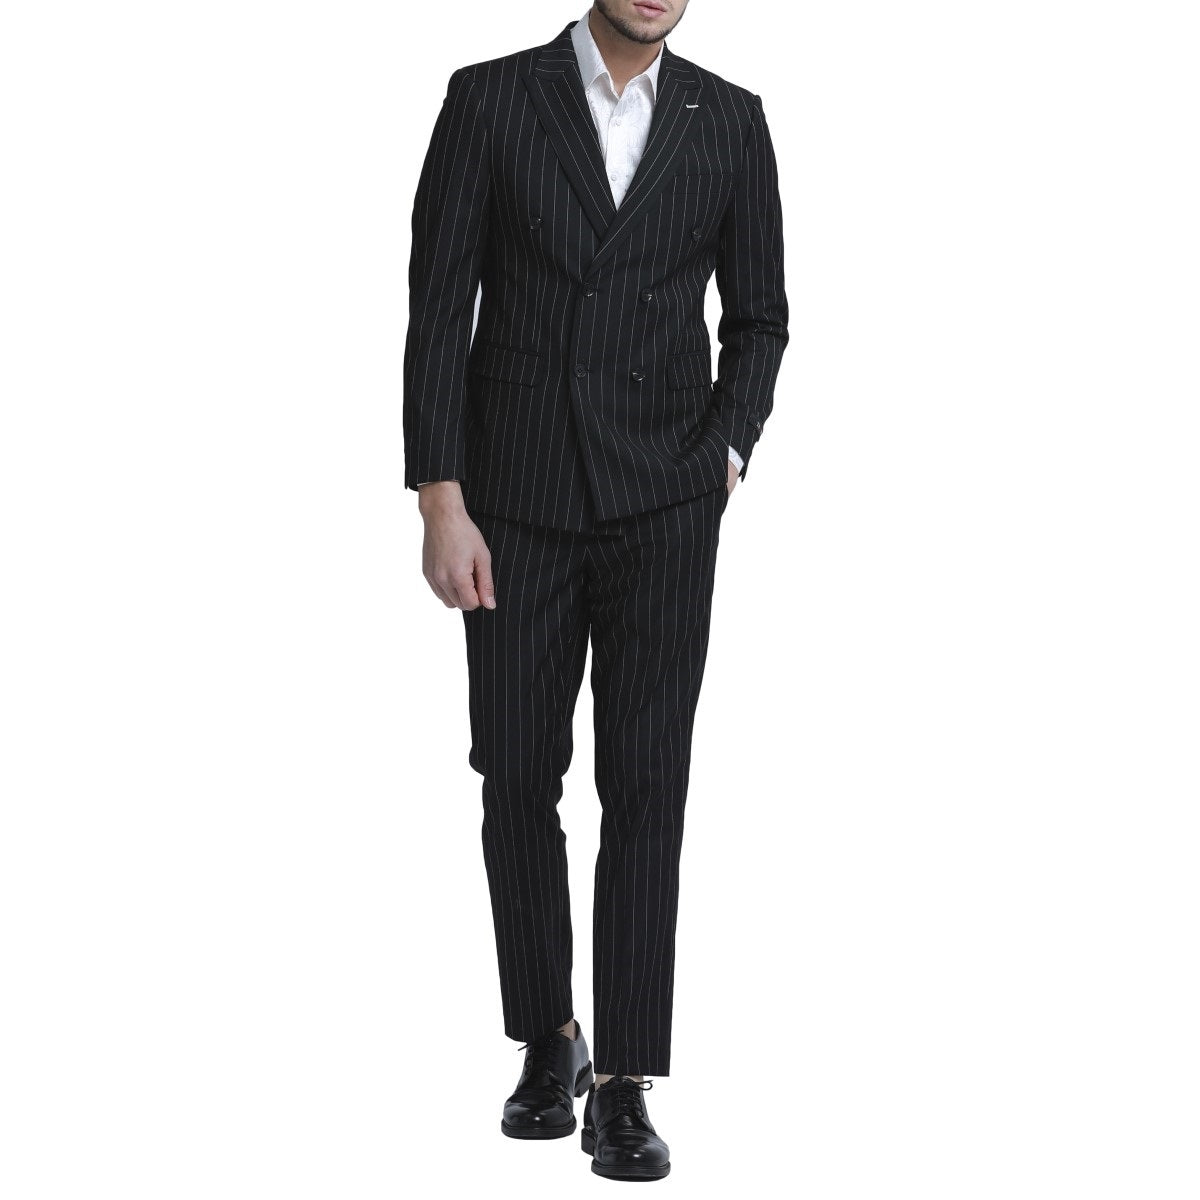 Traje Formal para Hombre TA-M340SK-03 - Formal Suit for Men